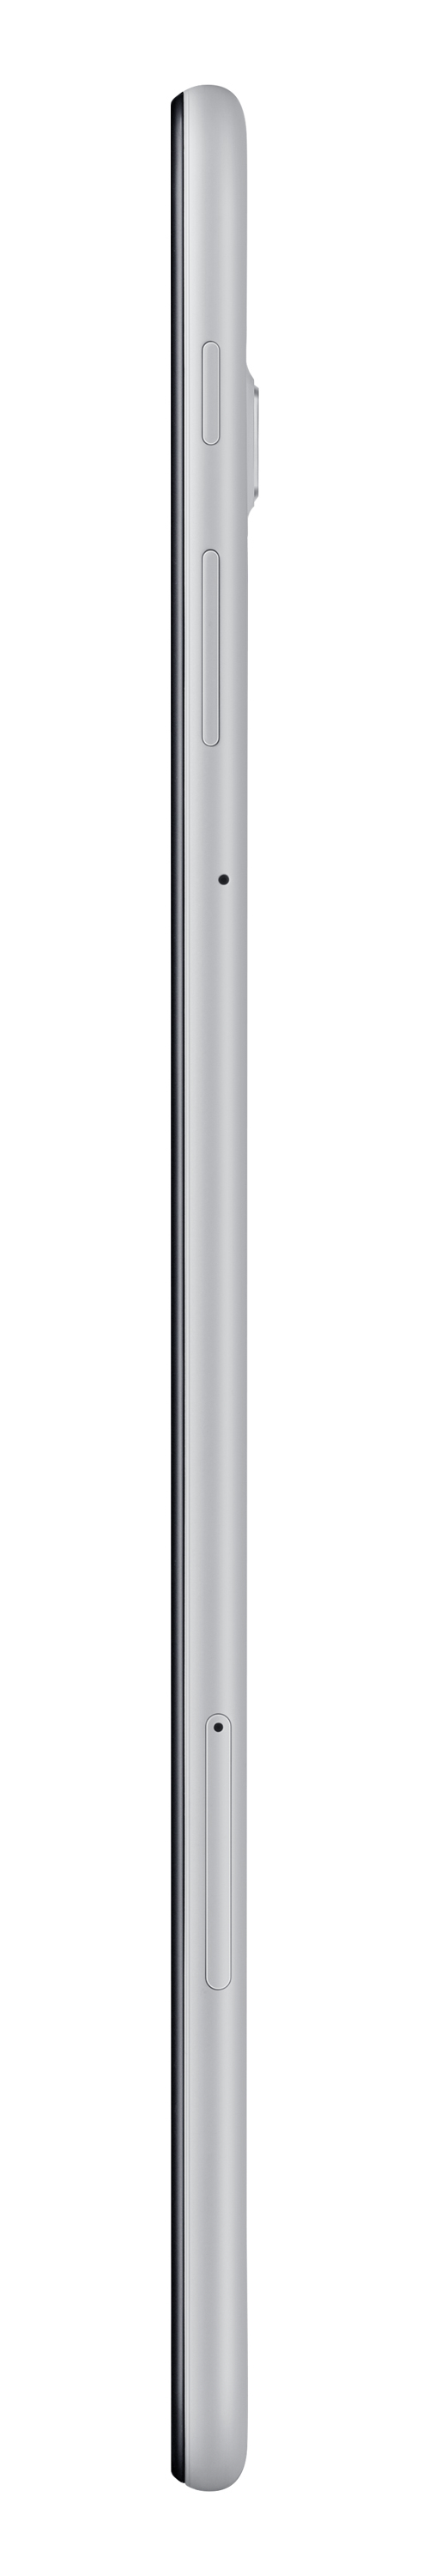 Samsung Galaxy Tab A 10.5 Inch Tablet 32GB Wi-Fi+Cellular Grey